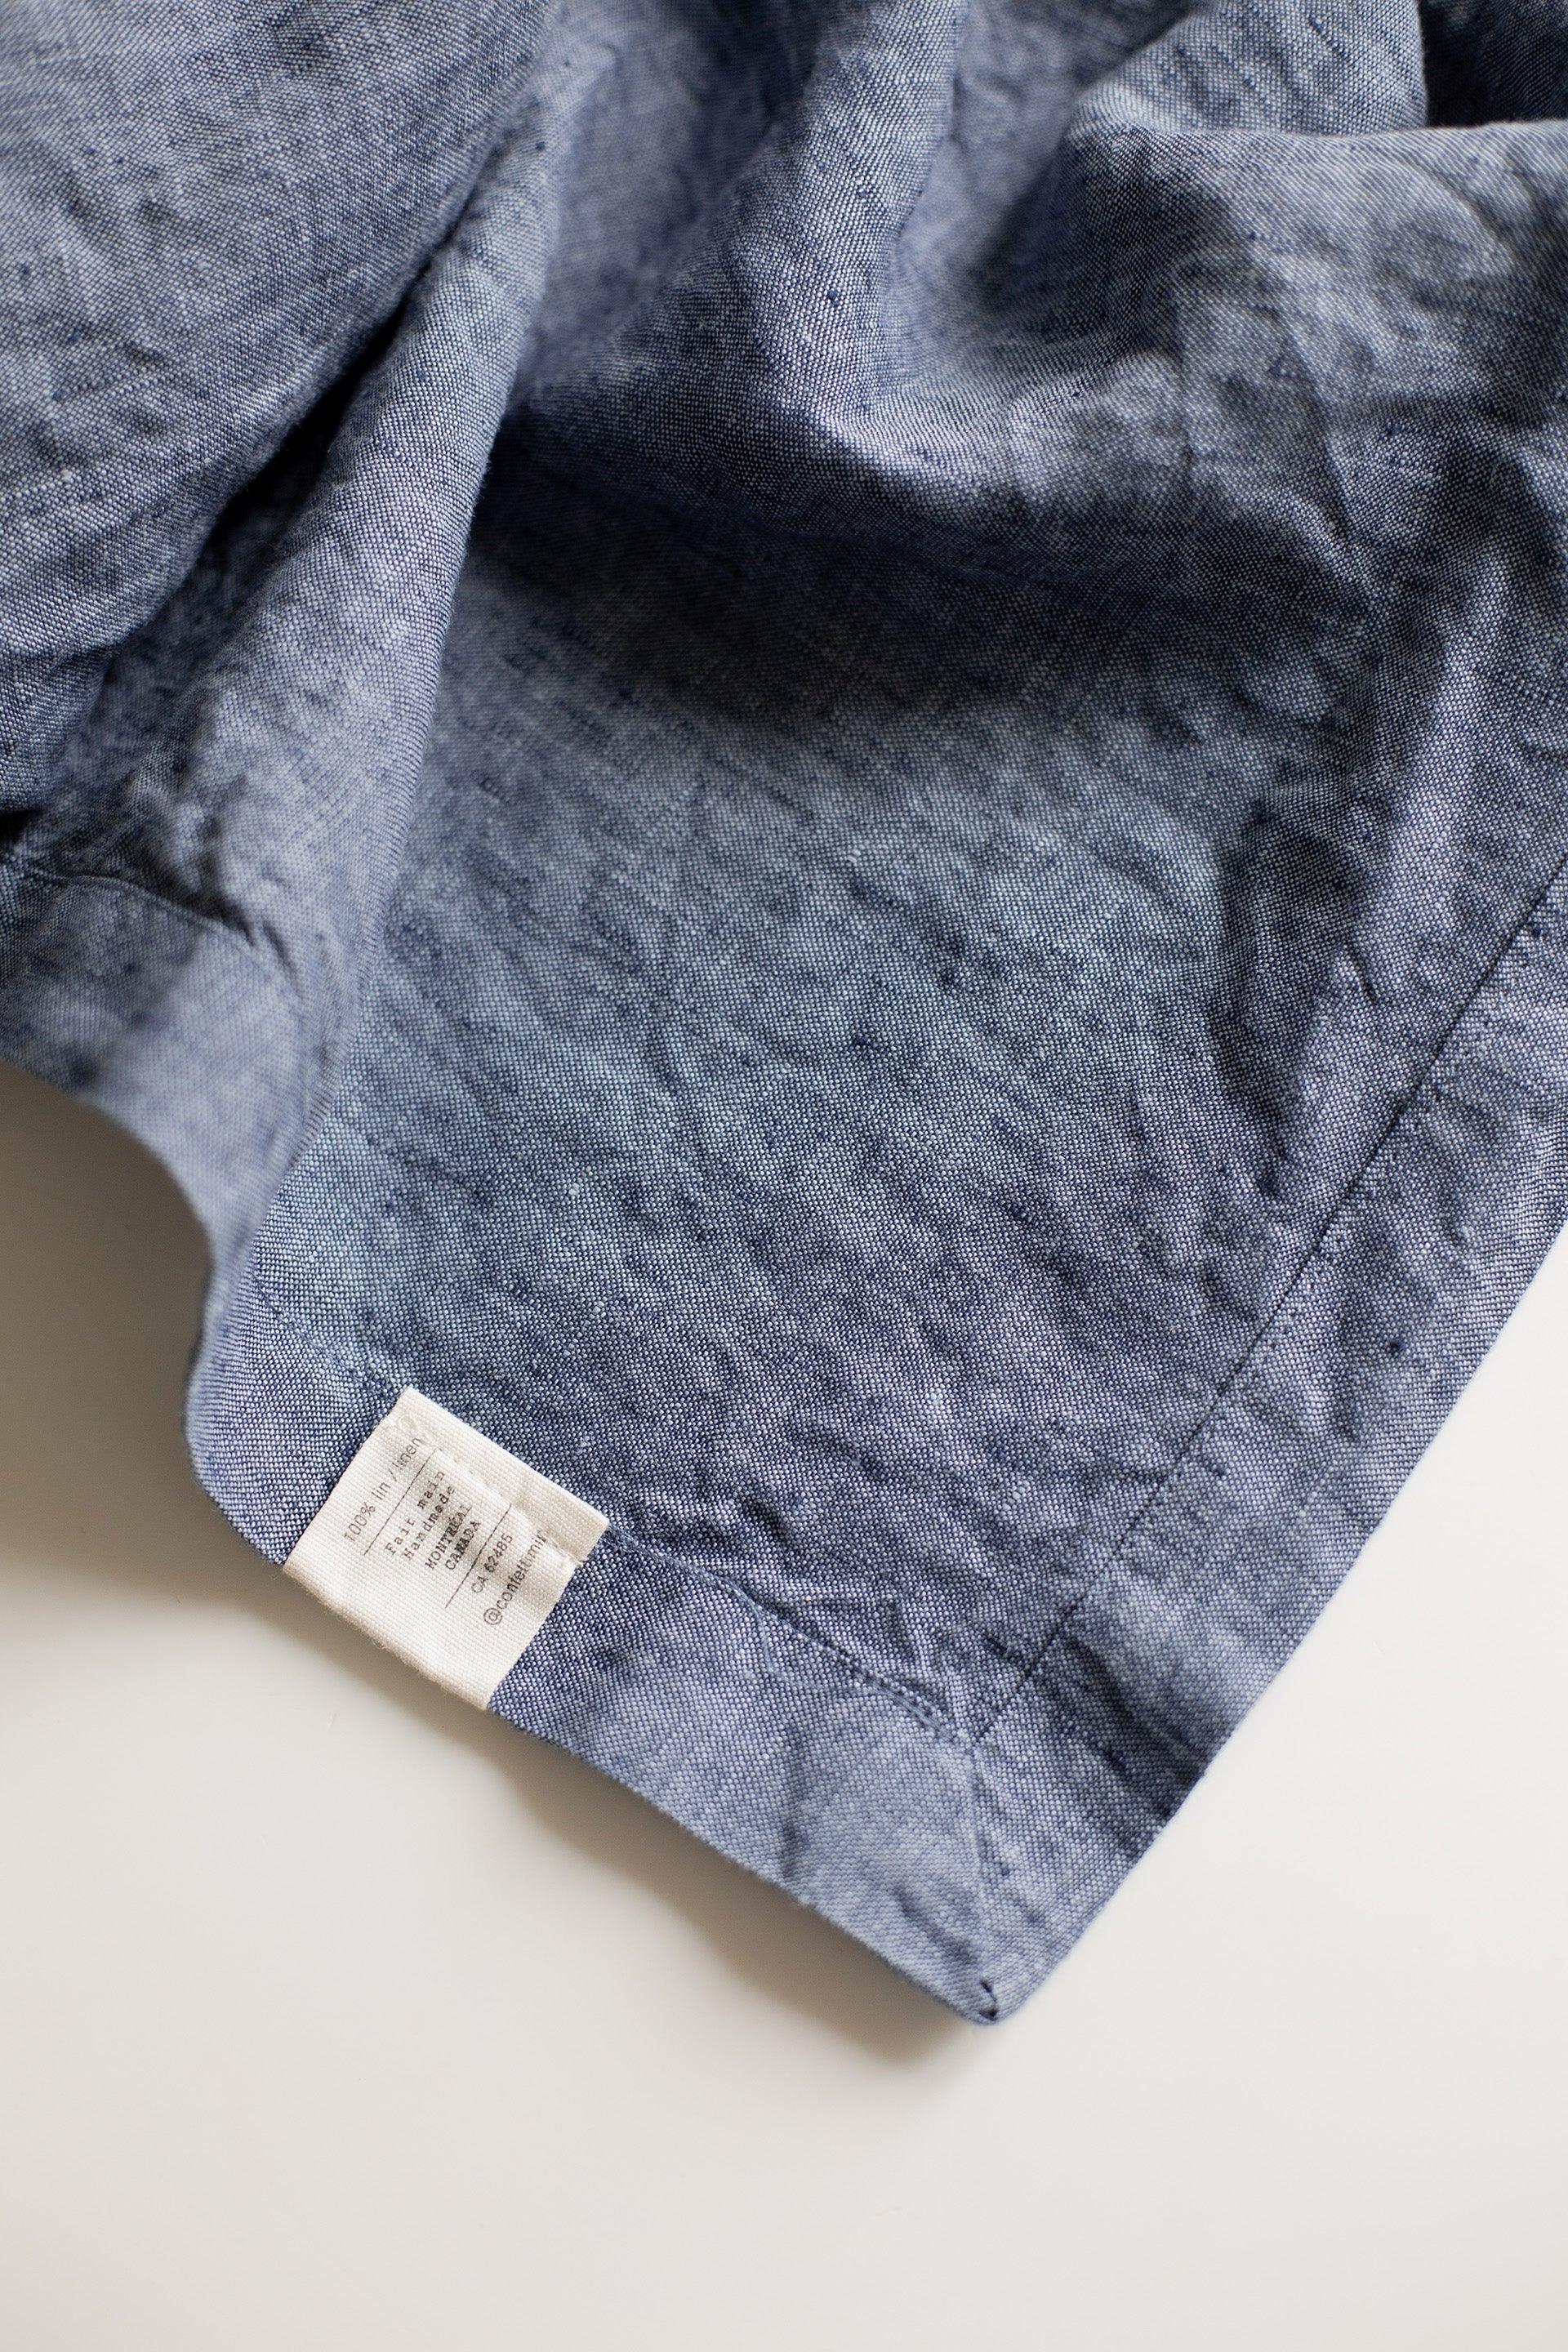 WS - Linen Tablecloth - Blue - Confetti Mill